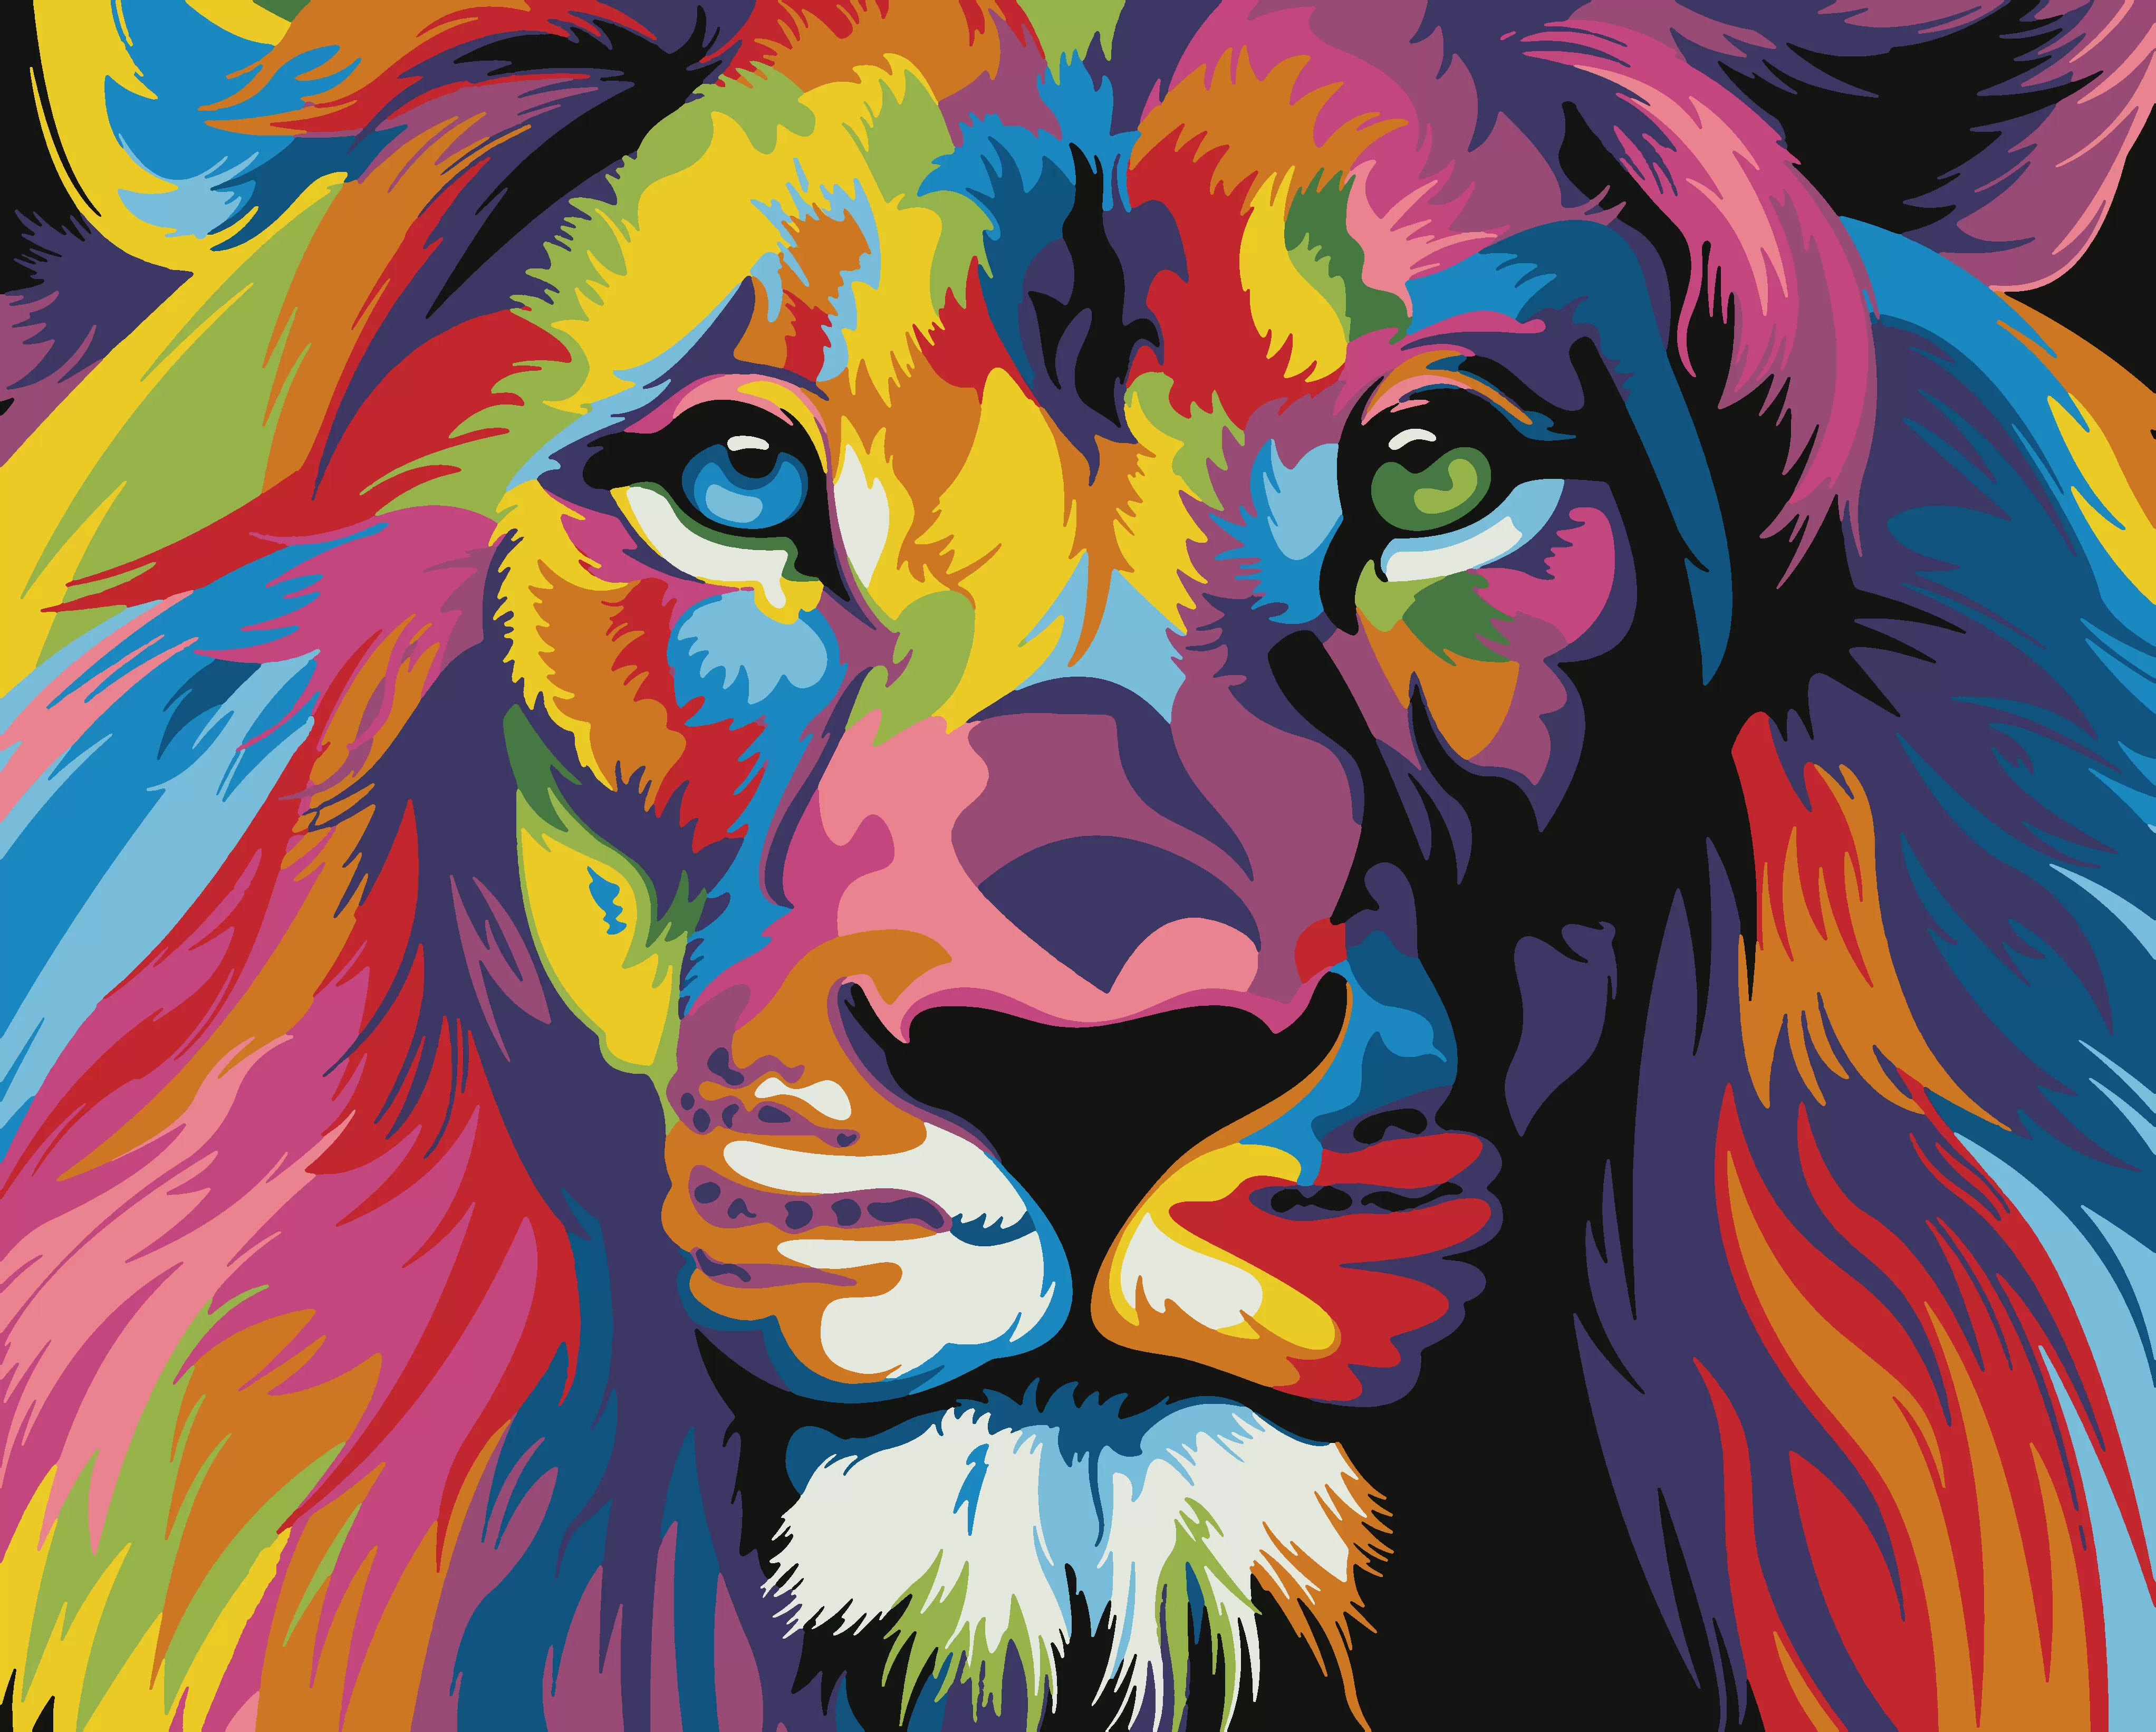 Картина по номерам Радужный лев